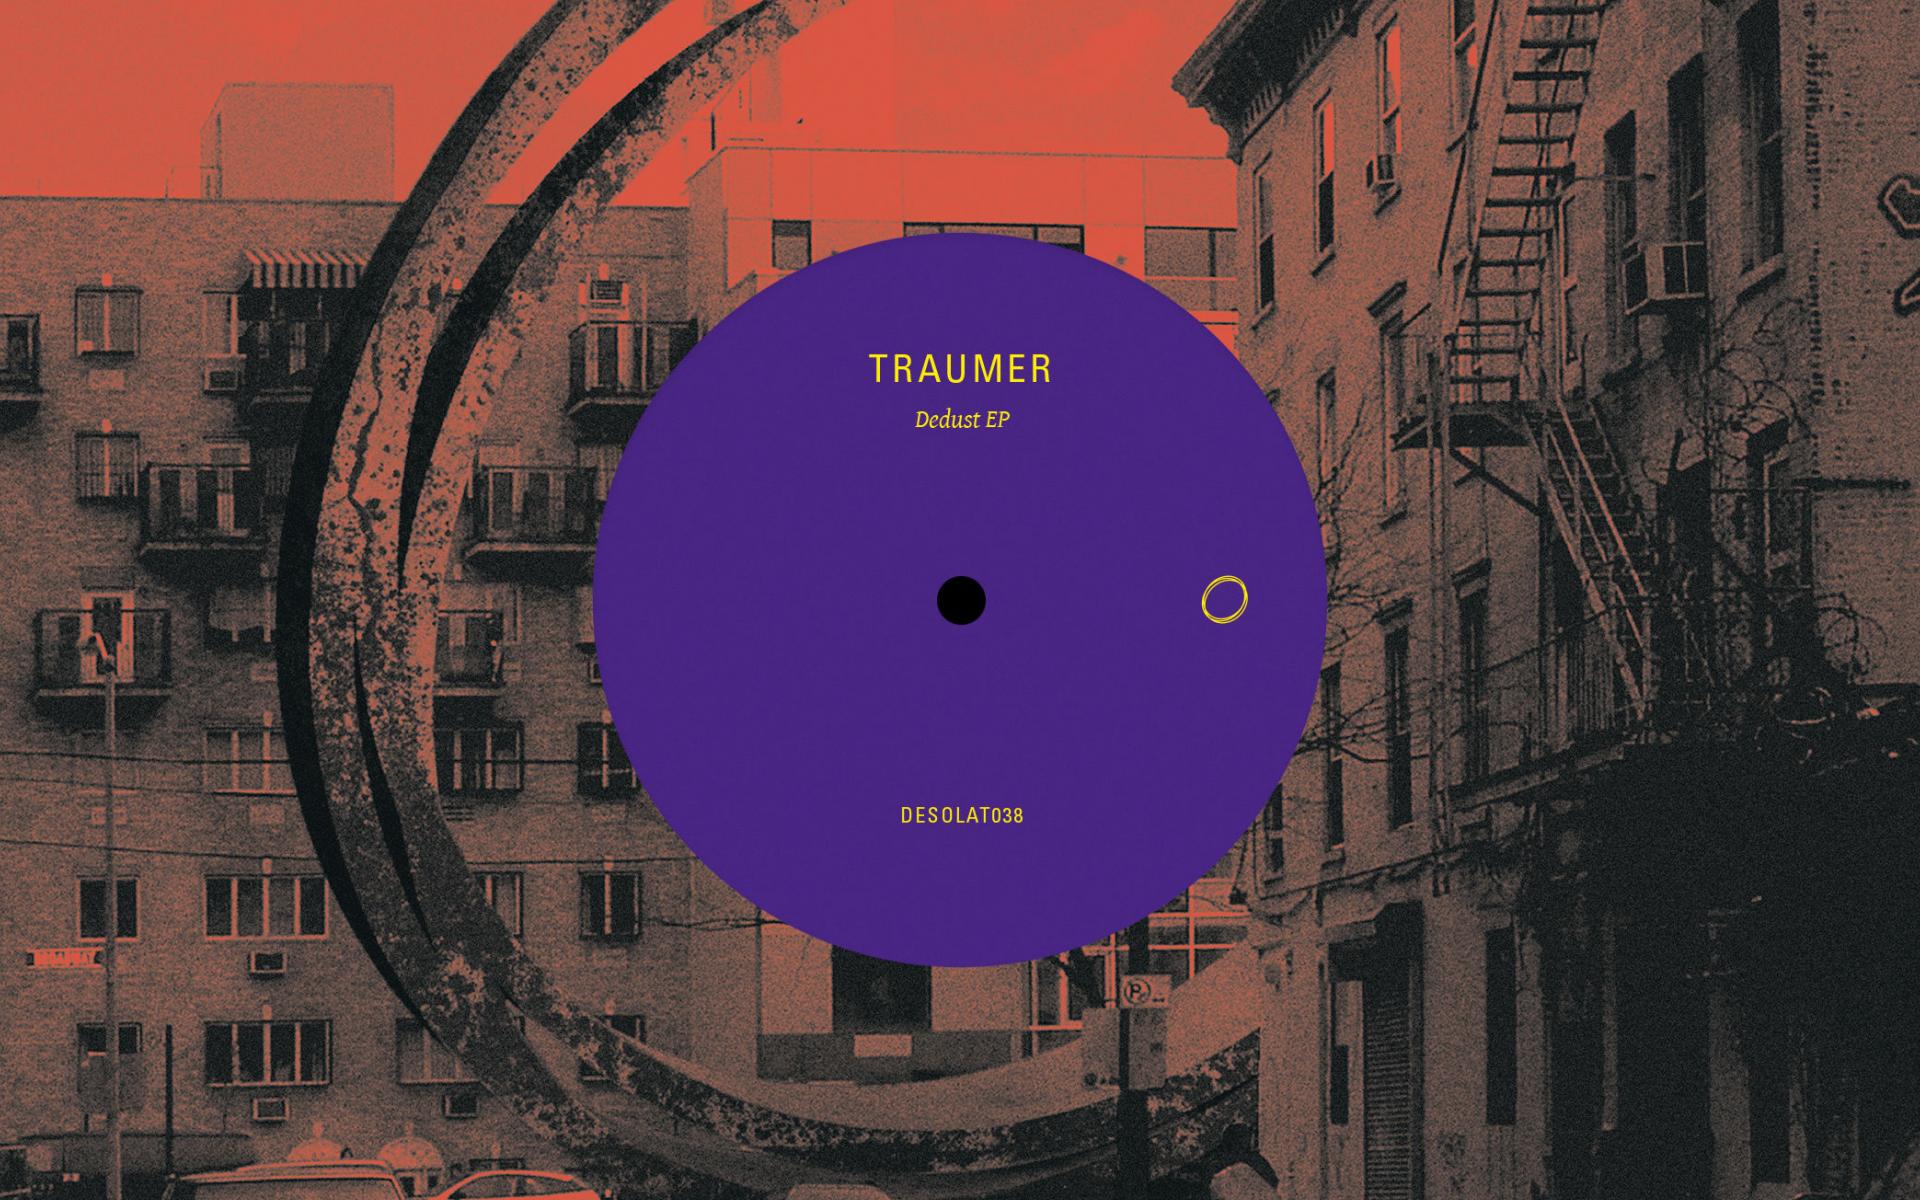 TRAUMER – DEDUST EP